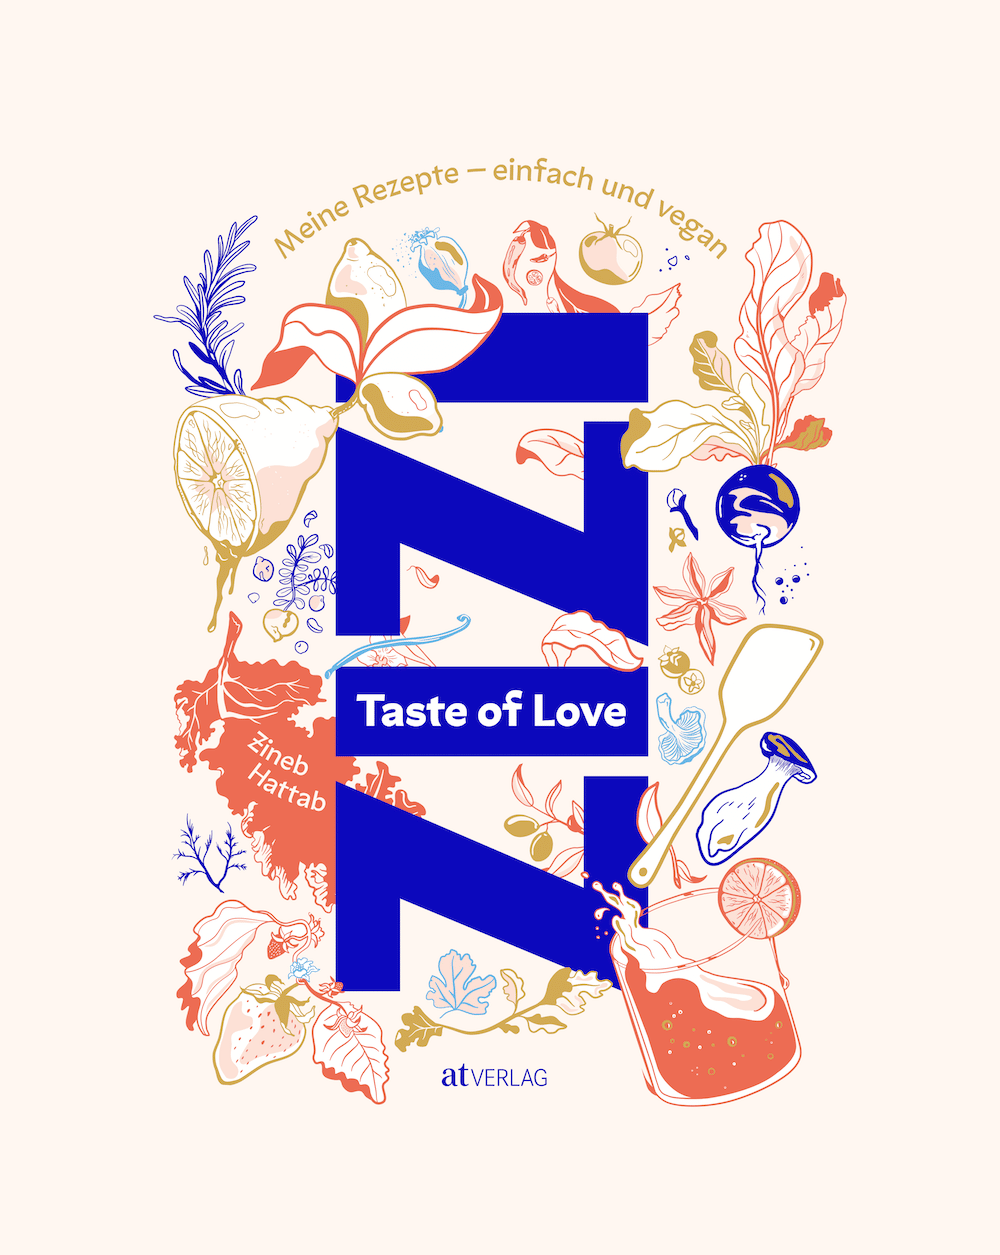 Kochbuchdesign: Taste of Love für Kochbuchpreis nominiert, Cover